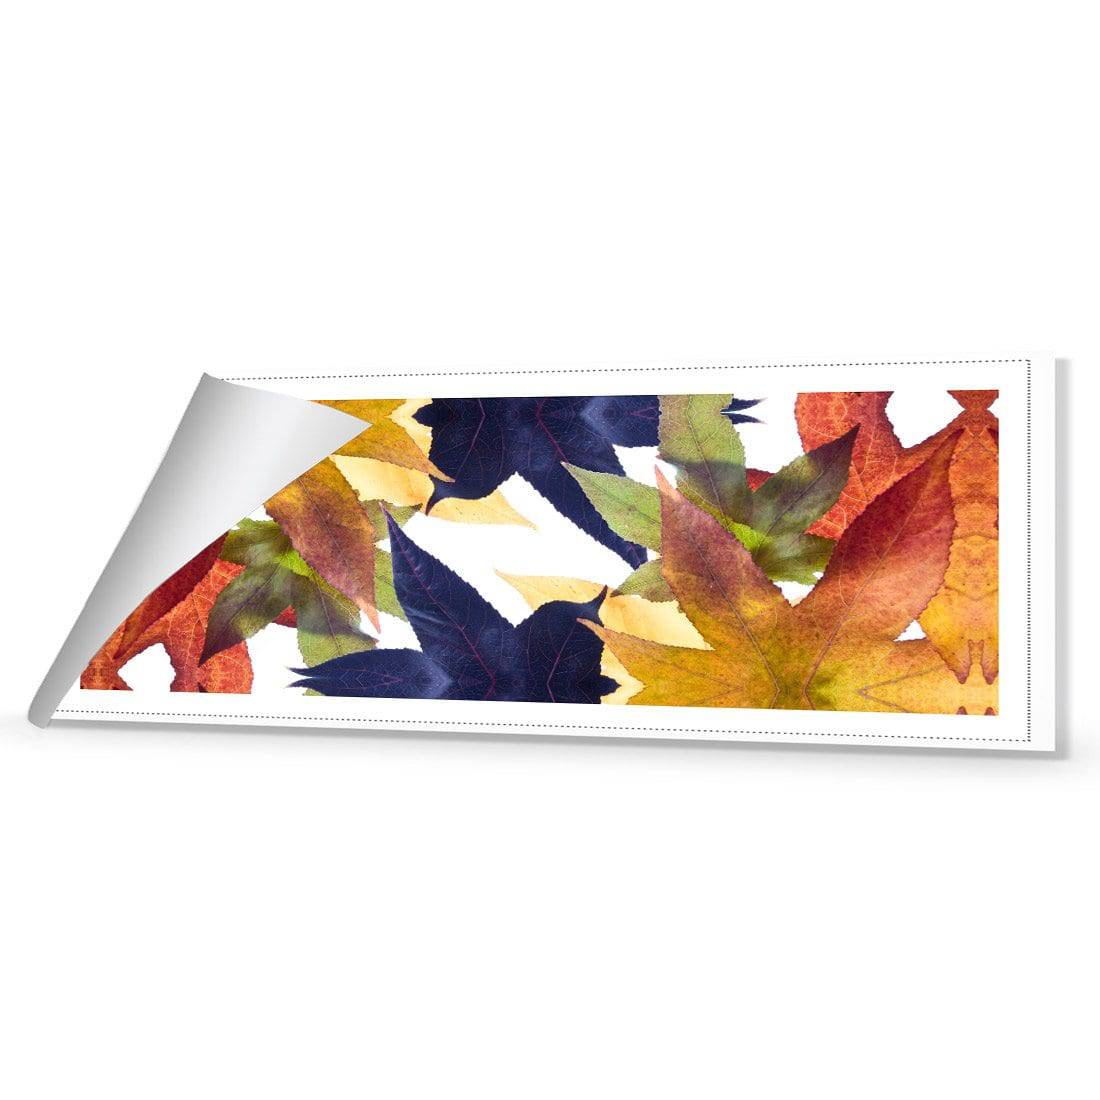 Leaf Kaleidoscope Canvas Art-Canvas-Wall Art Designs-60x20cm-Rolled Canvas-Wall Art Designs